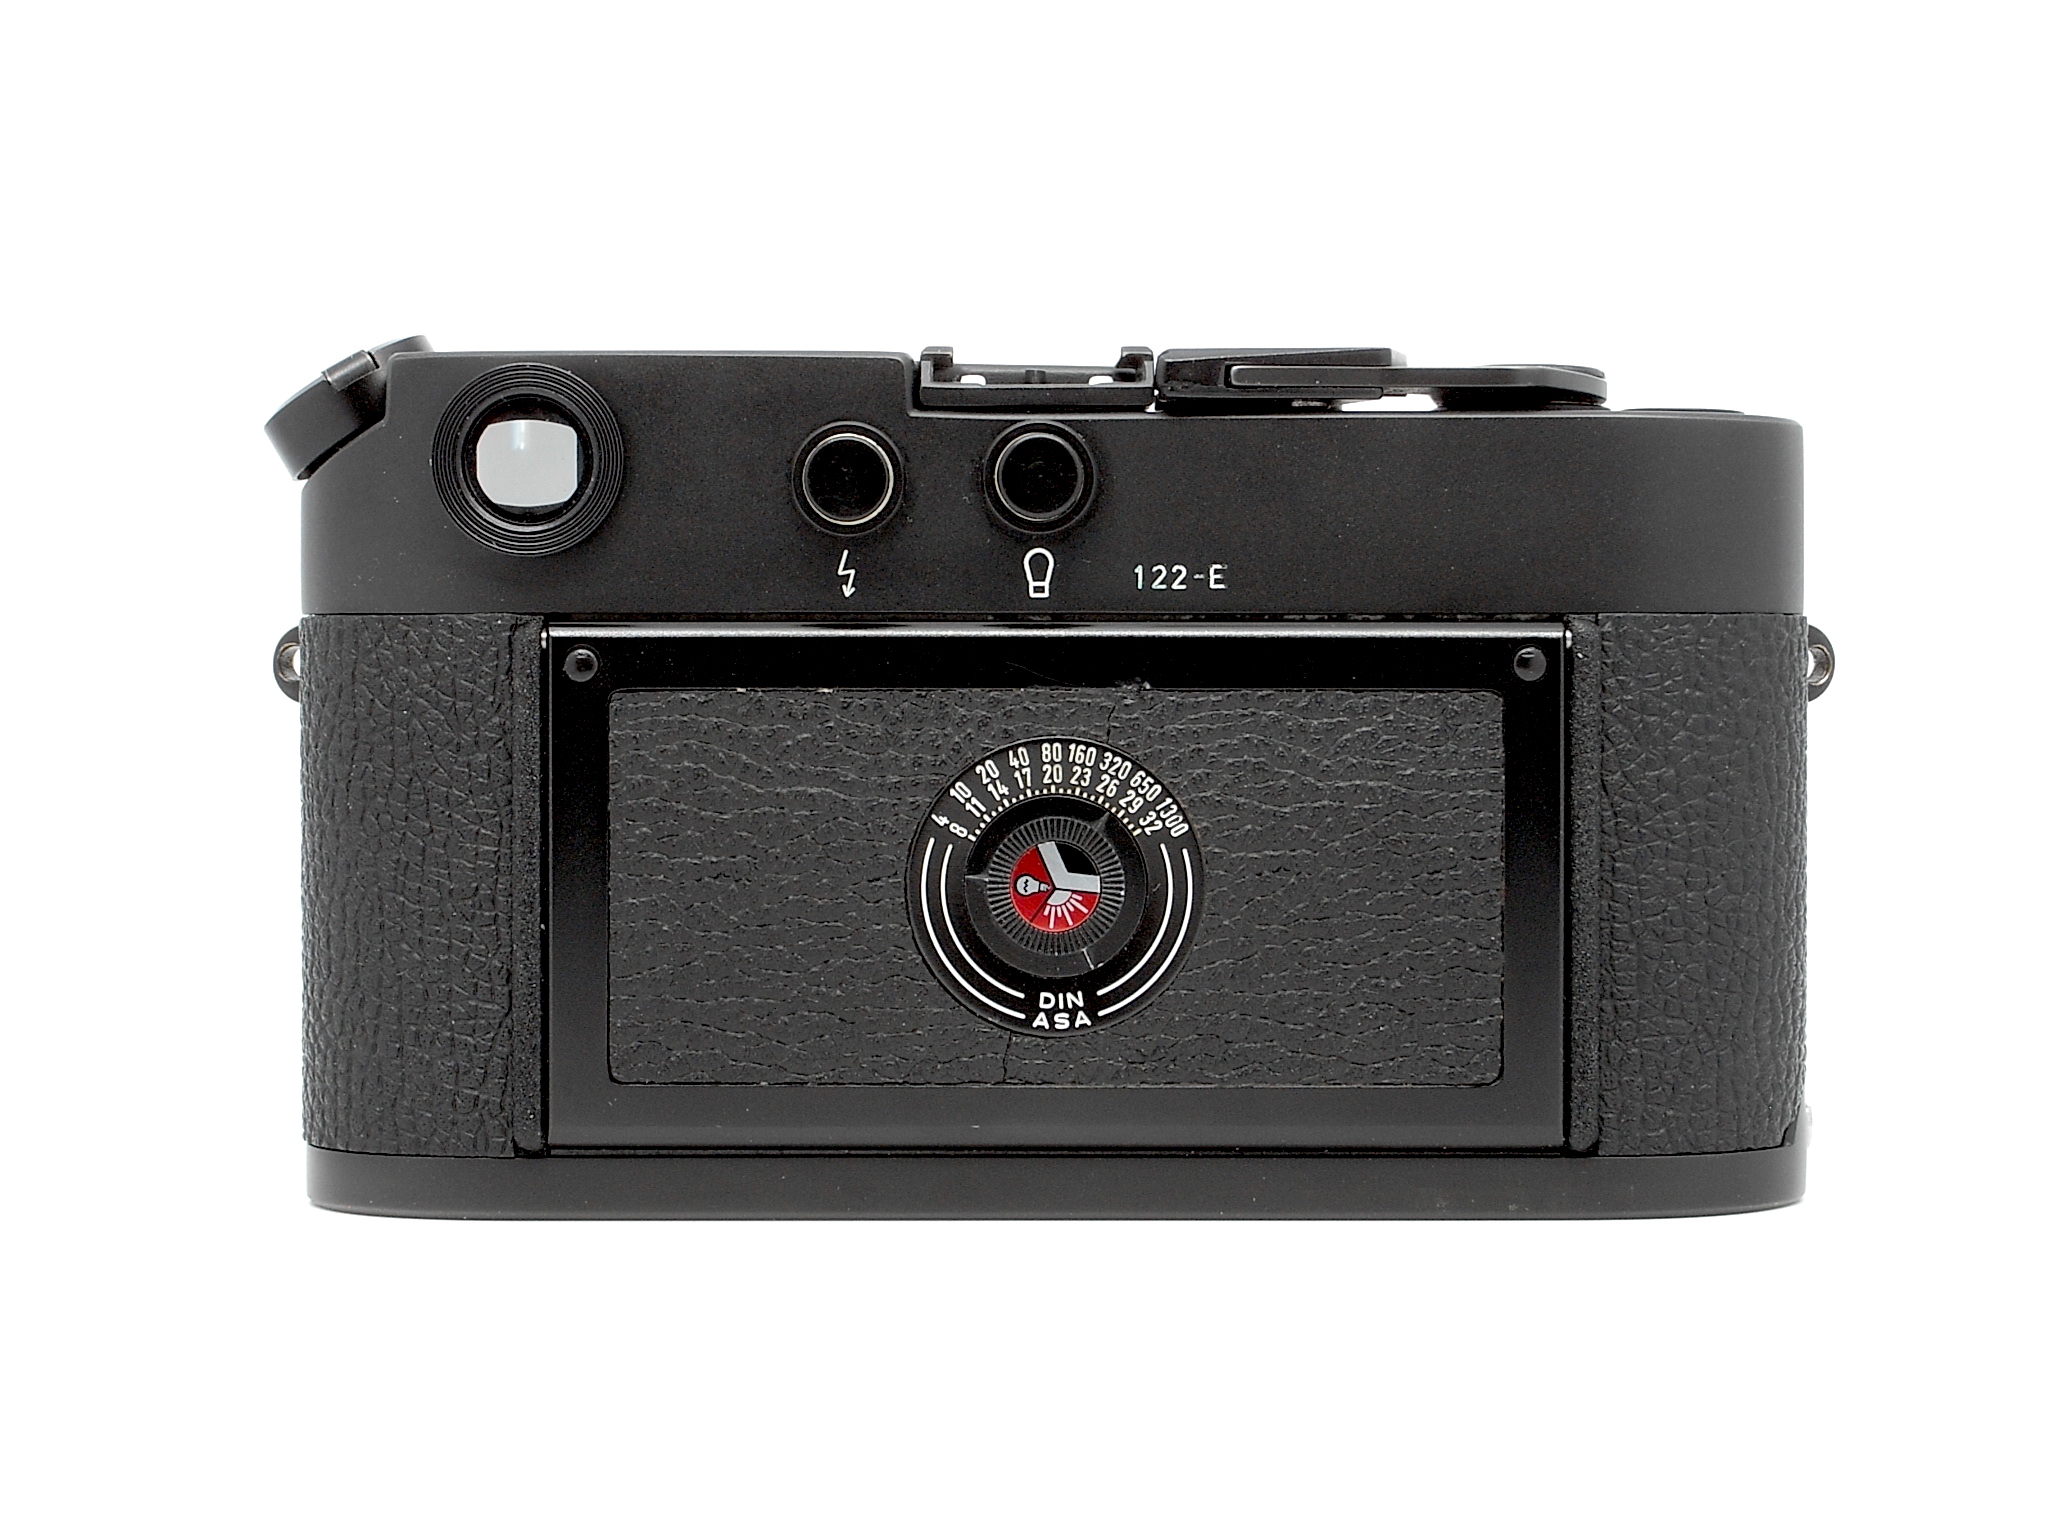 Leica M4 "50 Jahre"